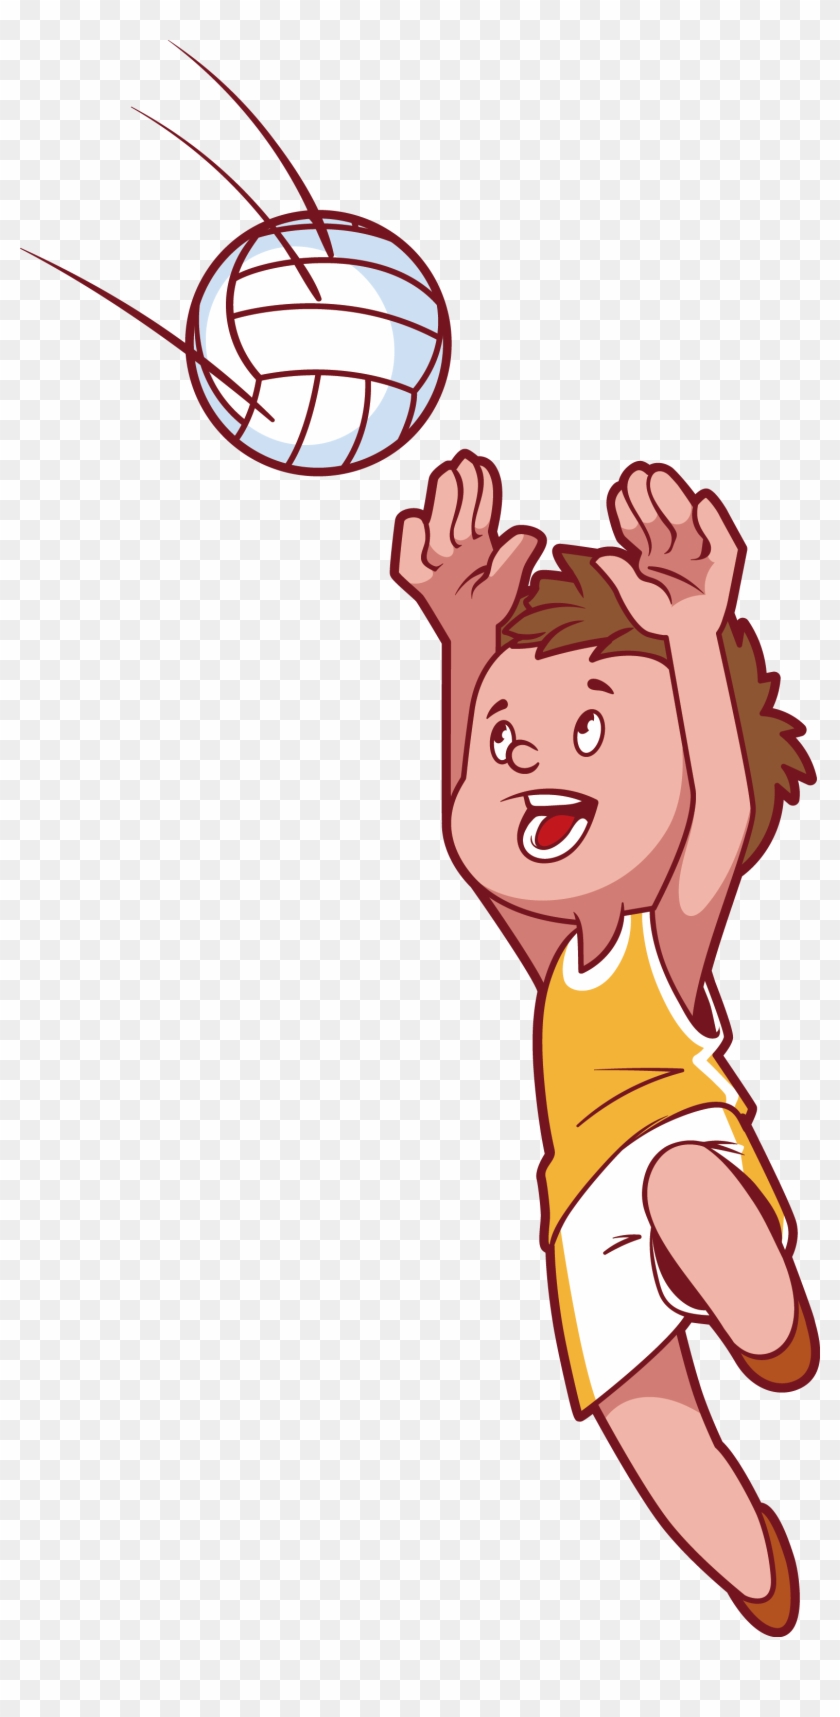 Рисунок волейболиста с мячом в прыжке